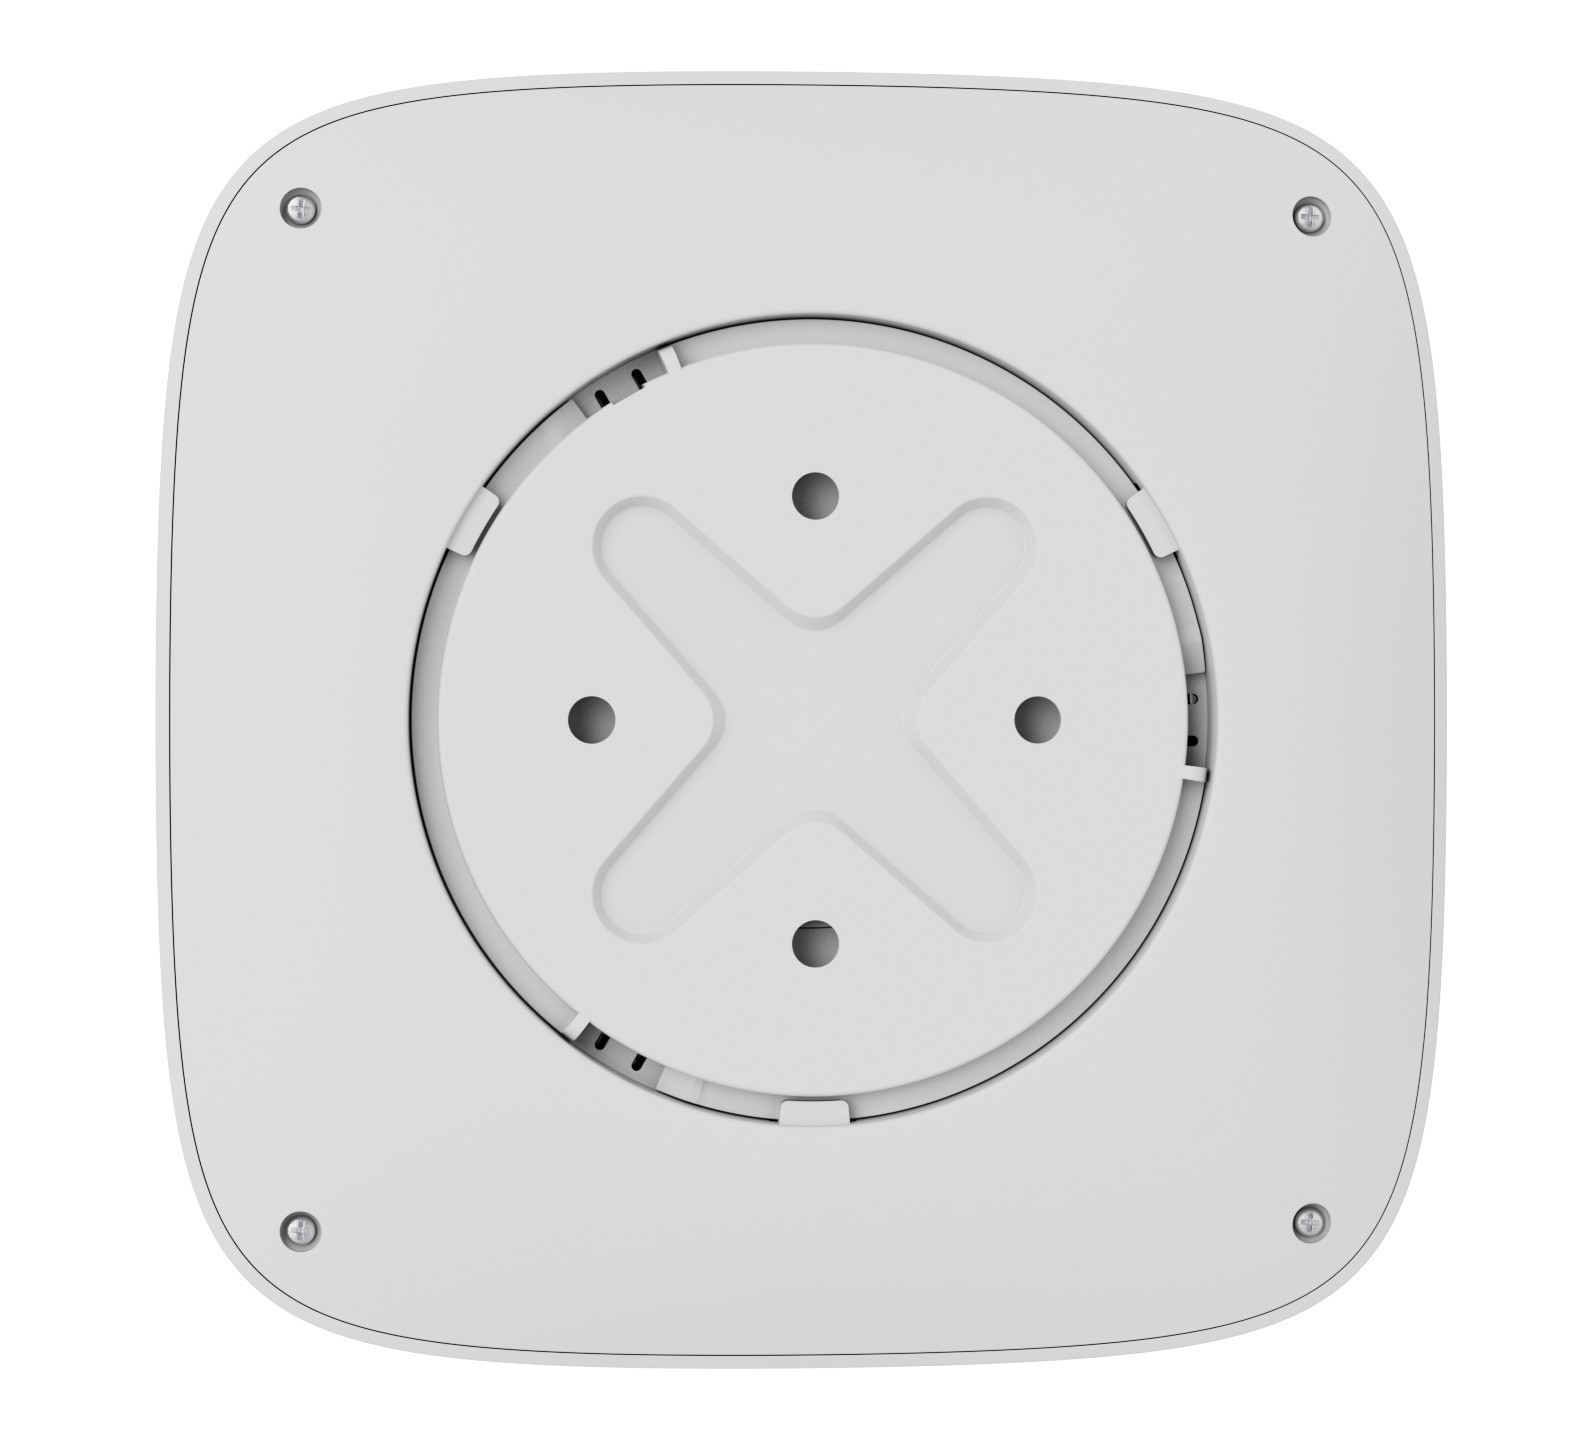 Беспроводной датчик дыма и температуры Ajax FireProtect 2 RB (Heat/Smoke) White инструкция - изображение 6